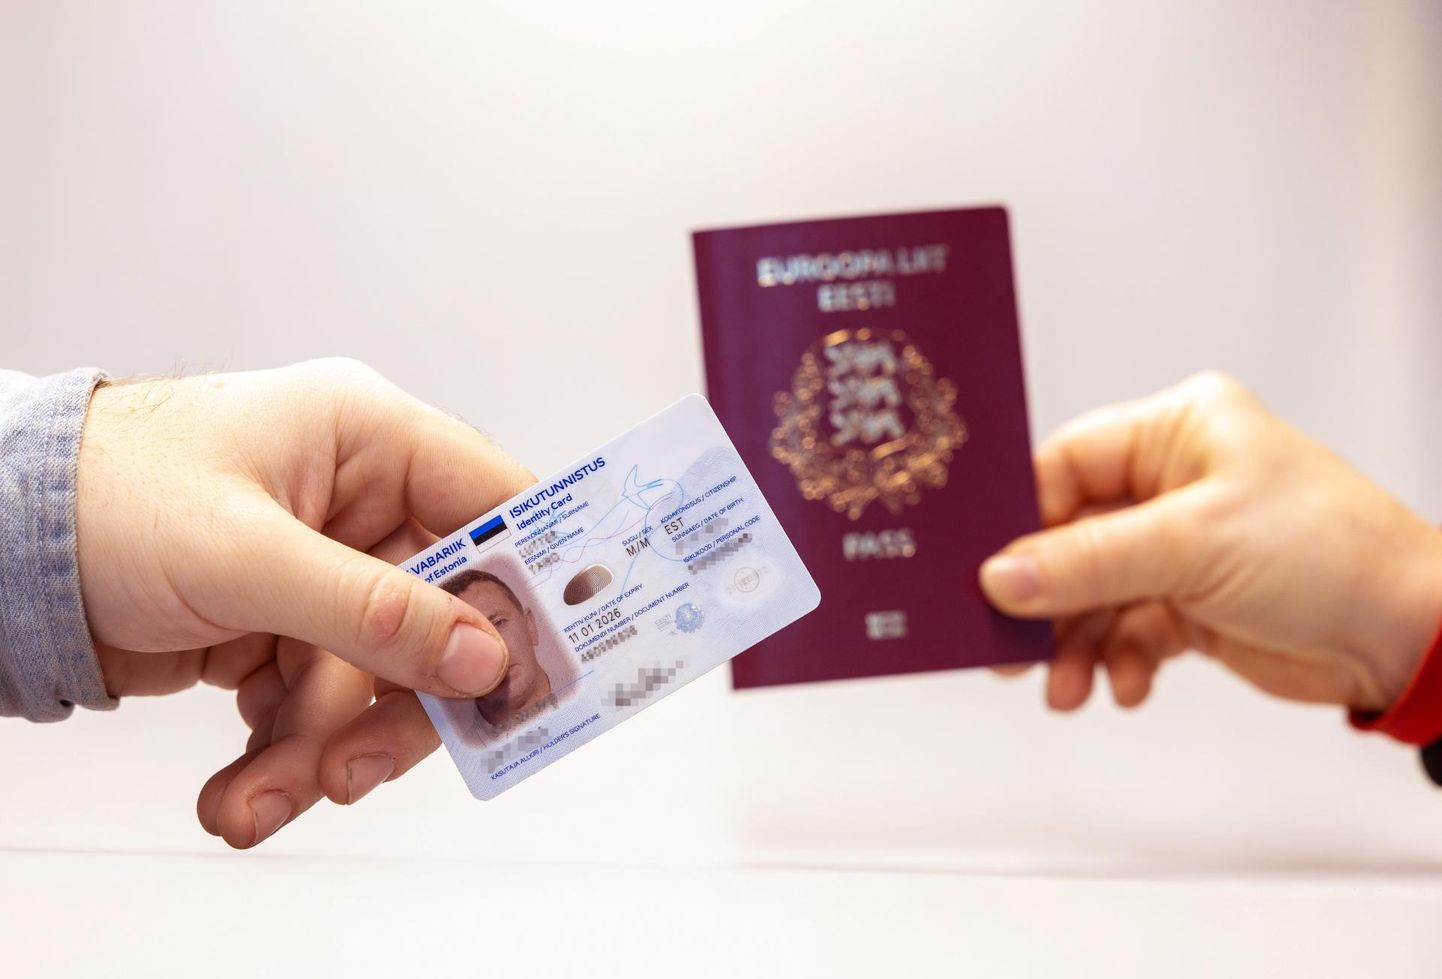 Kui seadusemuudatus heaks kiidetakse, saab inimene edaspidi ise otsustada, kas tal on ID-kaart või pass.